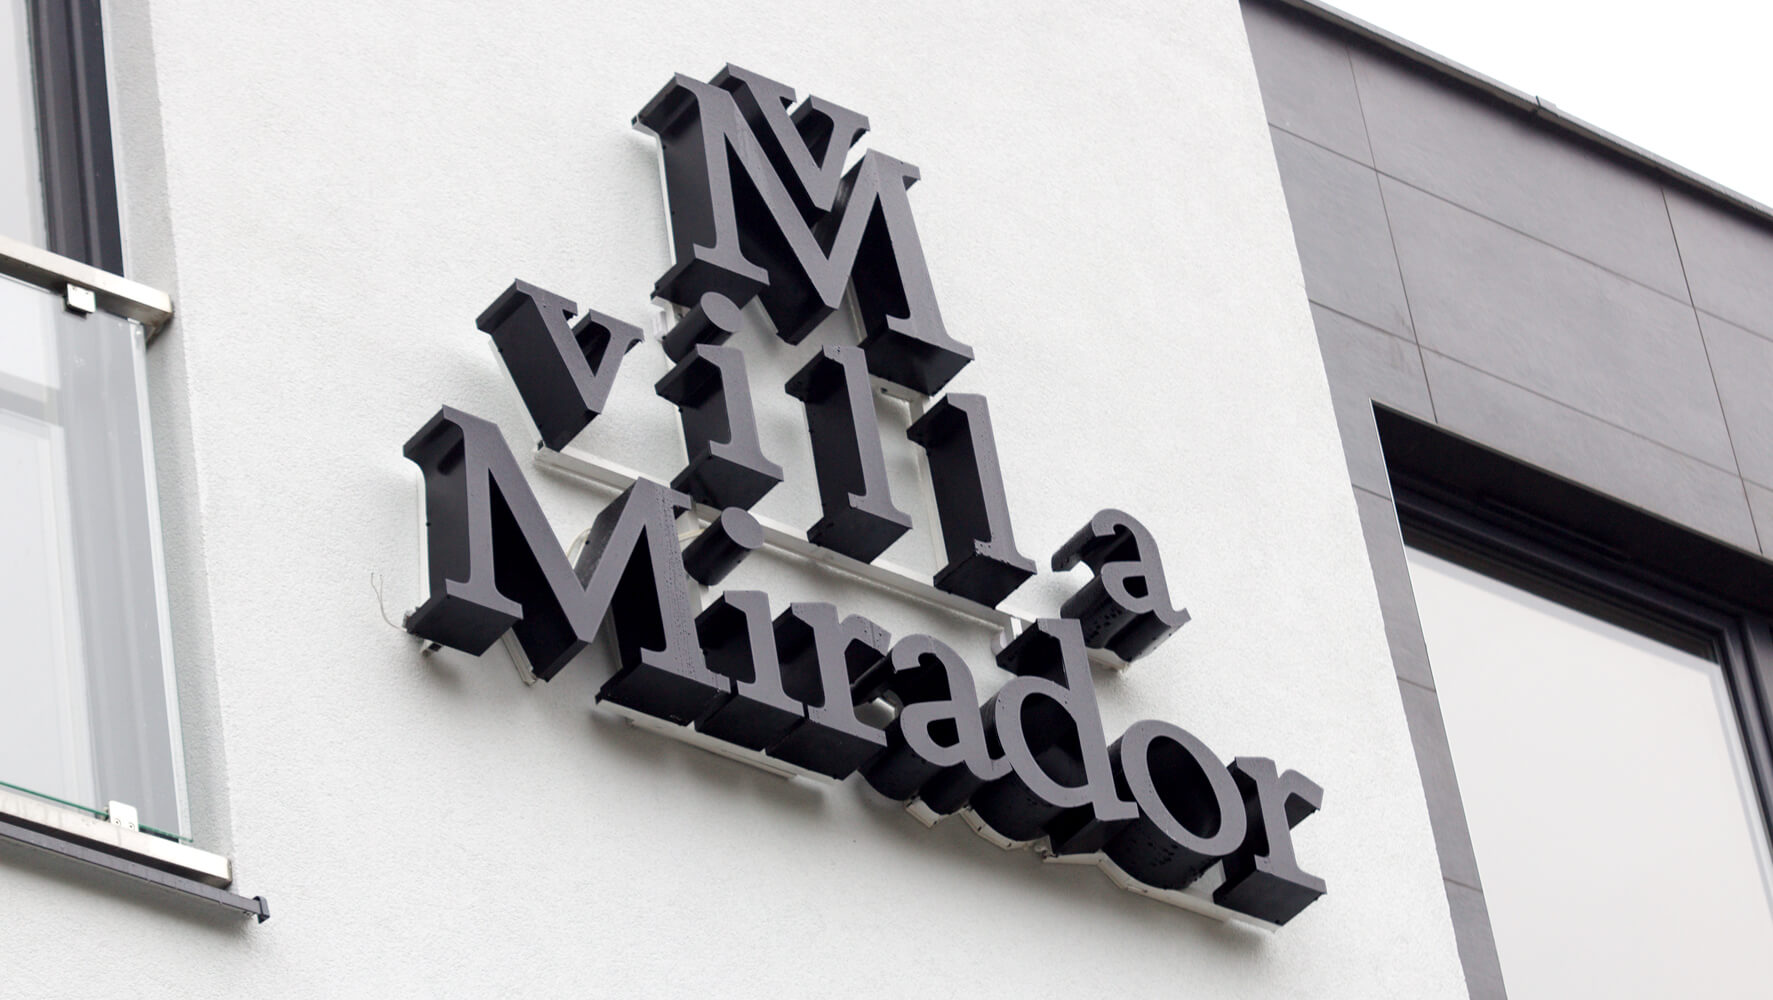 Villa Mirador - Villa Mirador - przestrzenne litery świetlne umieszczone na elewacji